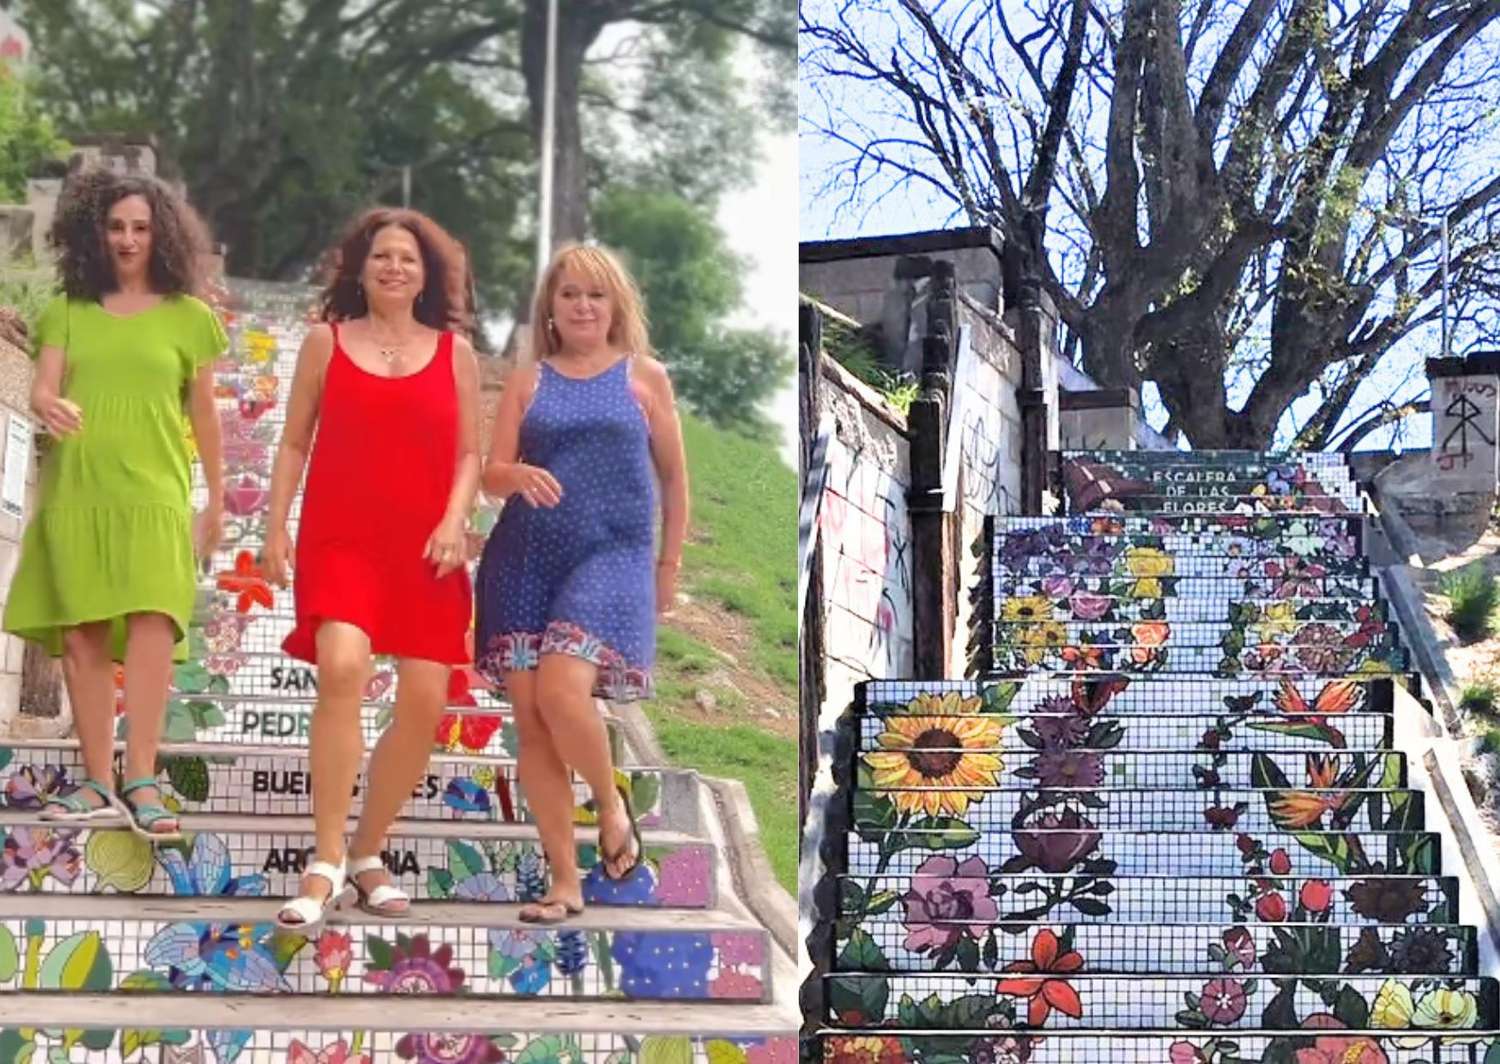 Turistas a puro show en la Escalera de las Flores